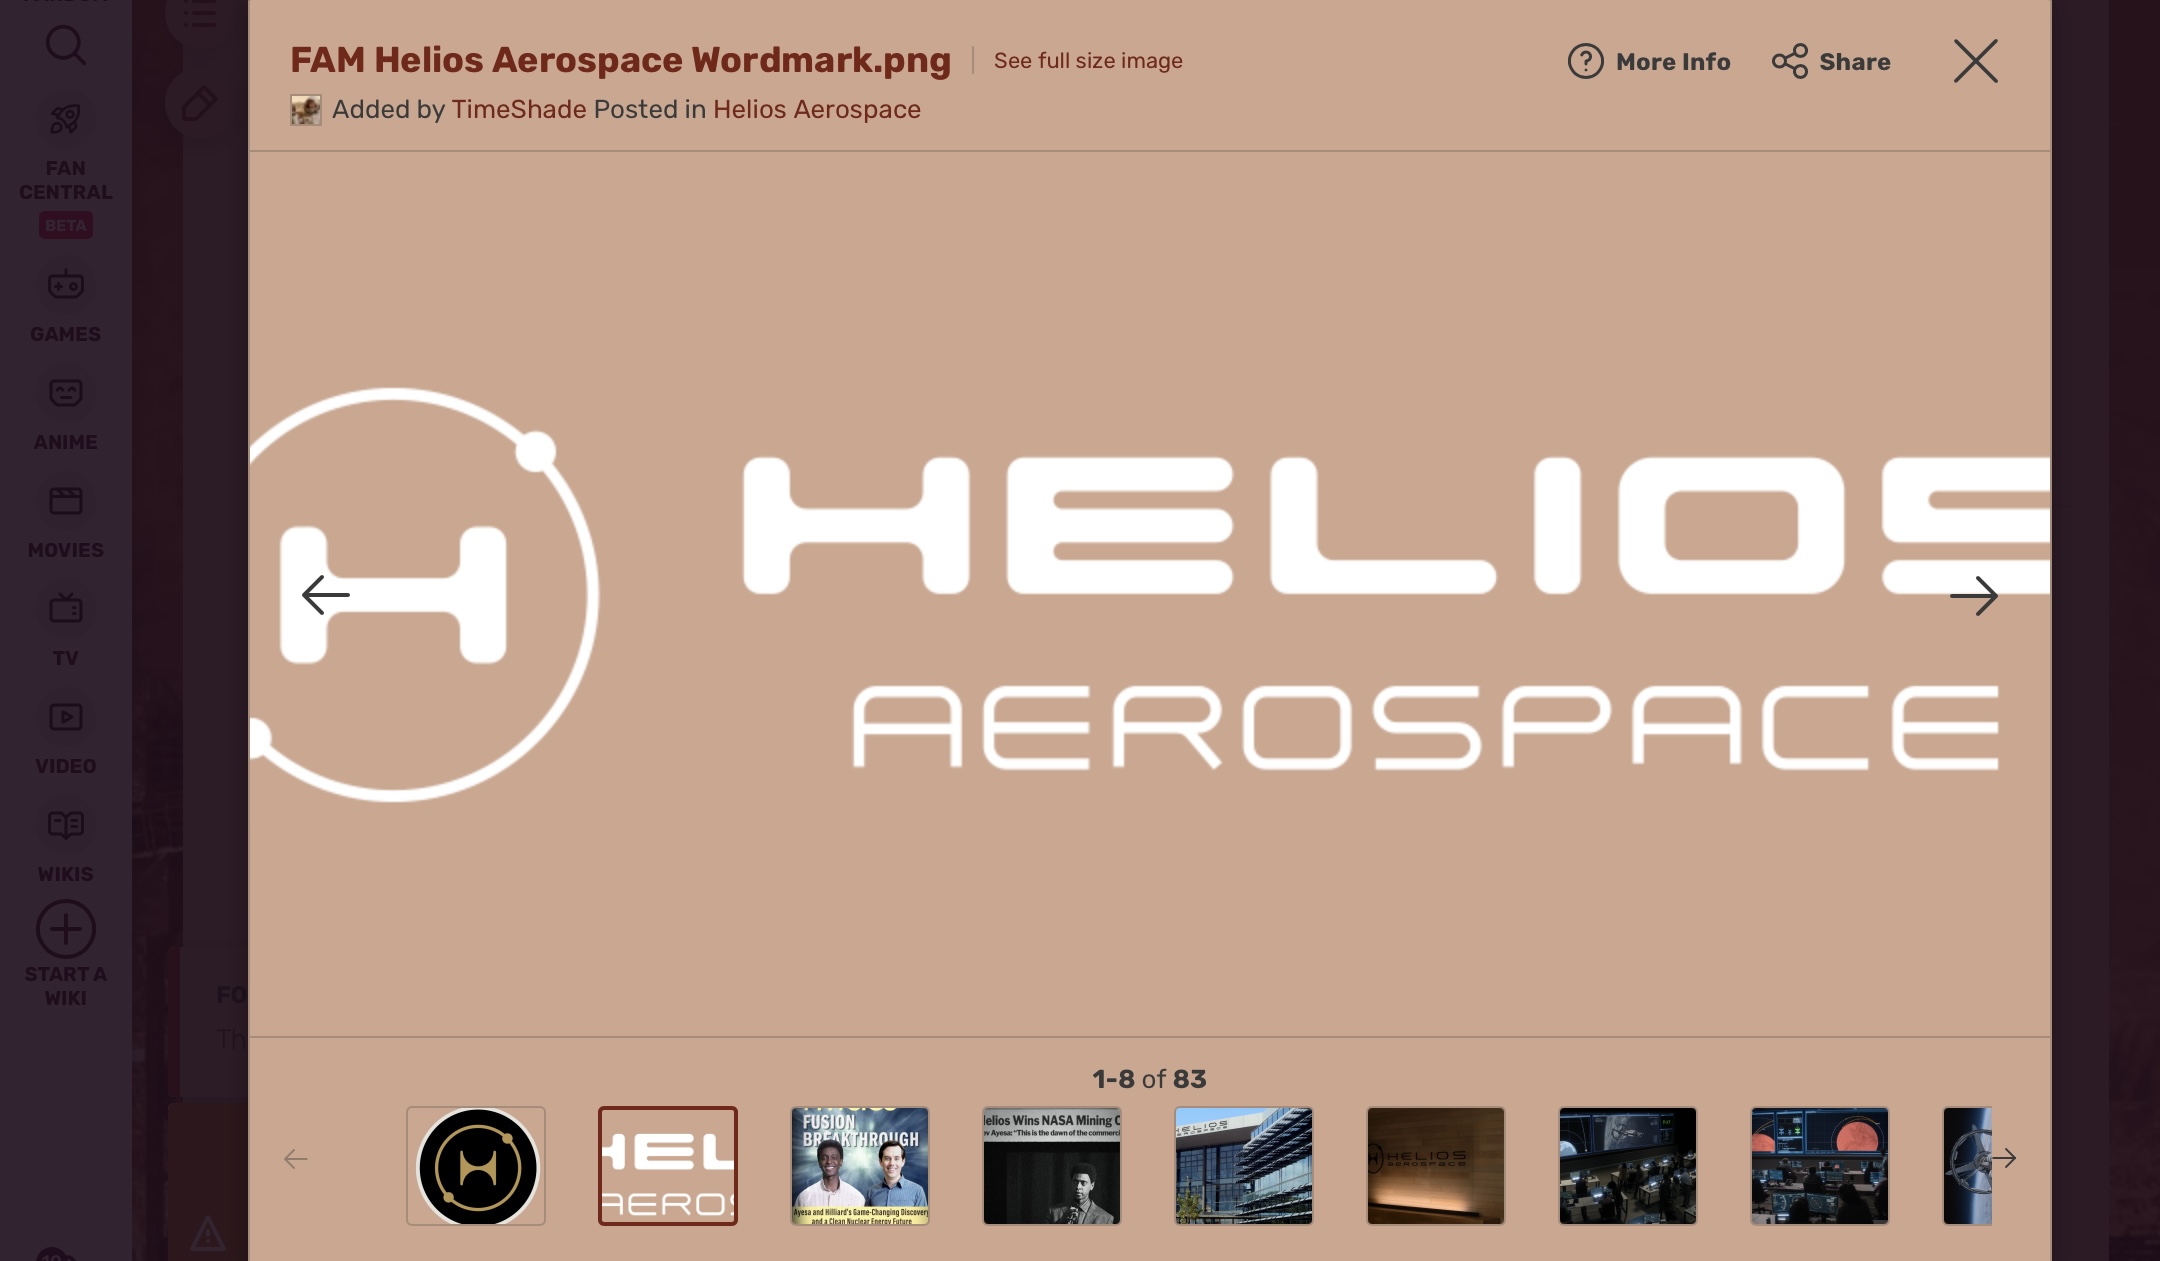 Aerospace, Free Full-Text